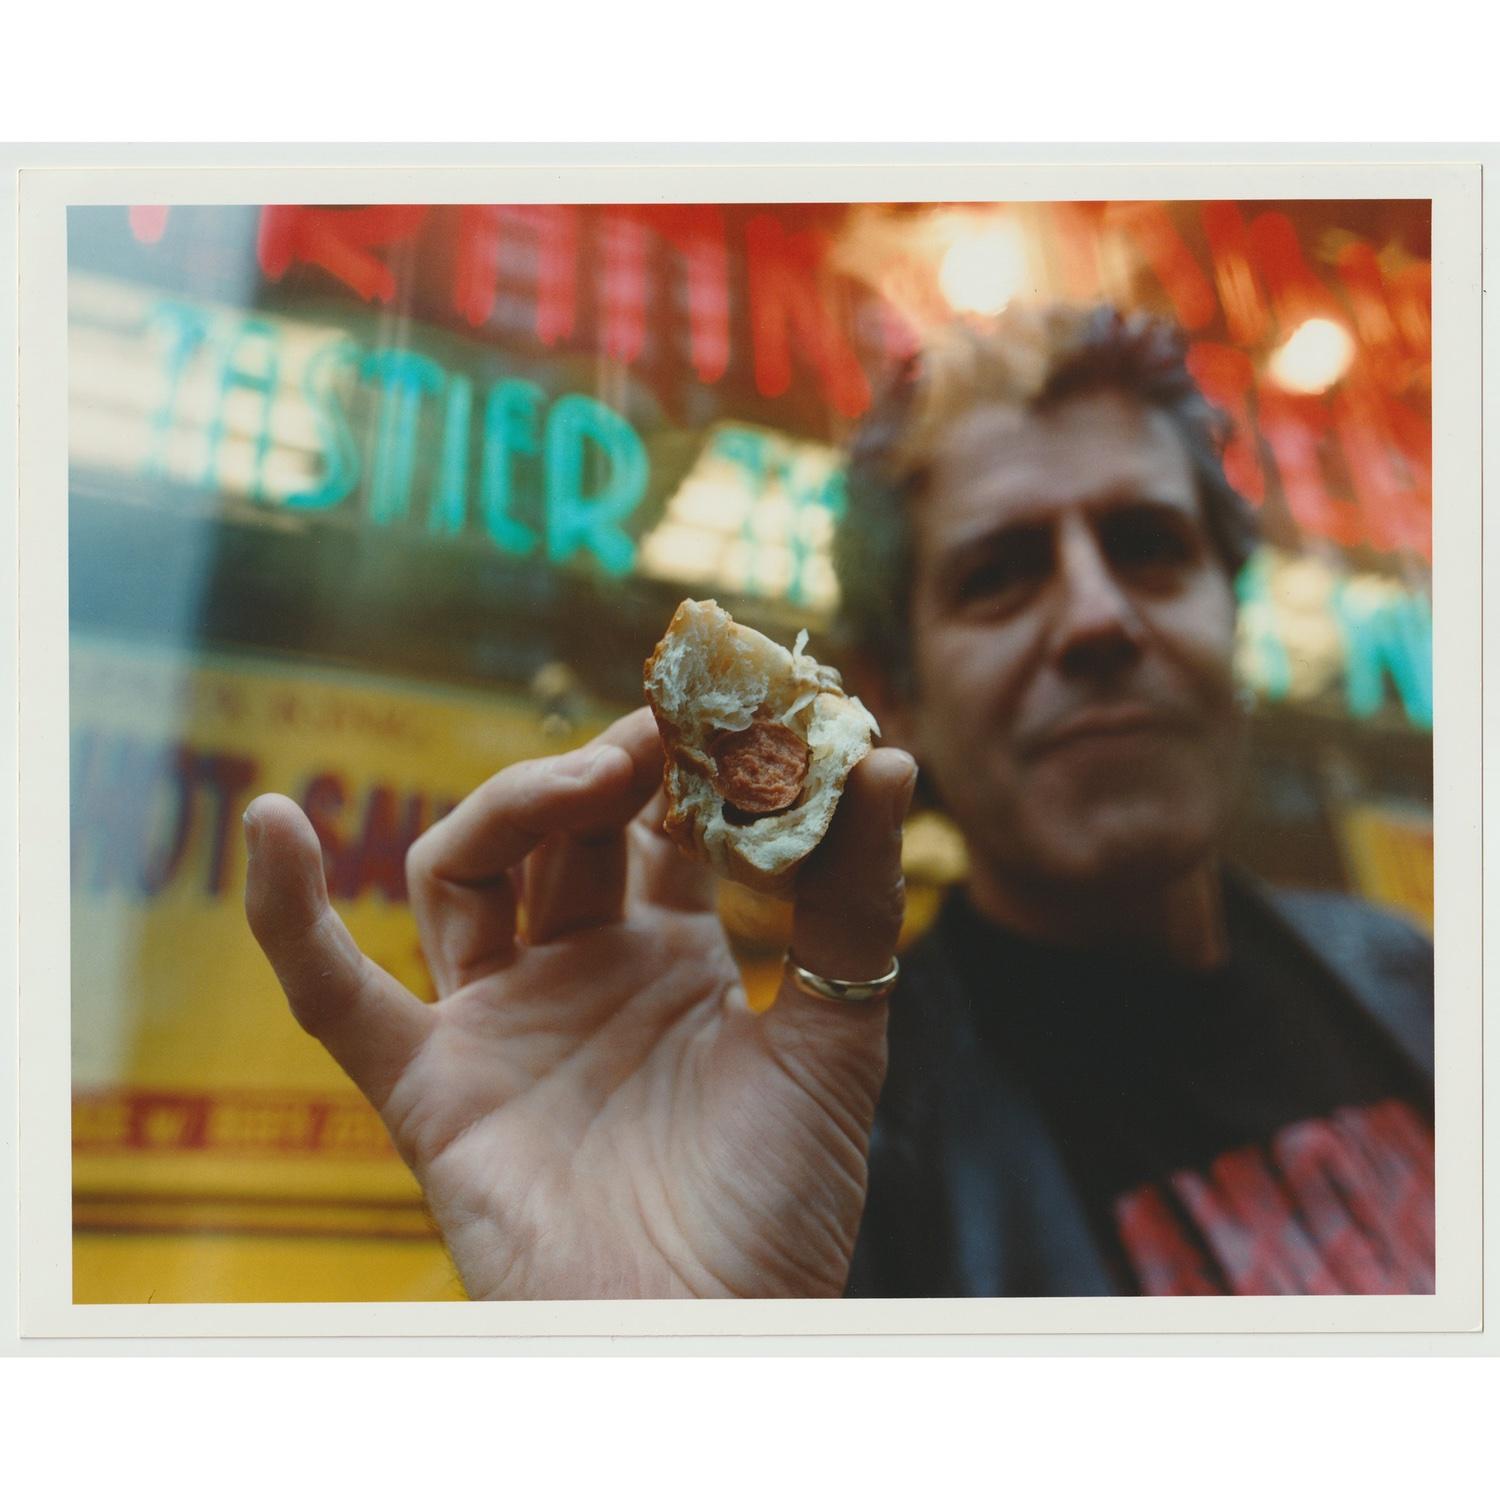 Original handgedruckter 8x10" Vintage-Farbdruck des Fotografen Jake Chessum von Anthony Bourdain, aufgenommen in NYC vor Papaya King an der 86th und Lexington

Von Jake zum Zeitpunkt des Fotoshootings gedruckt und auf der Rückseite von Jake Chessum